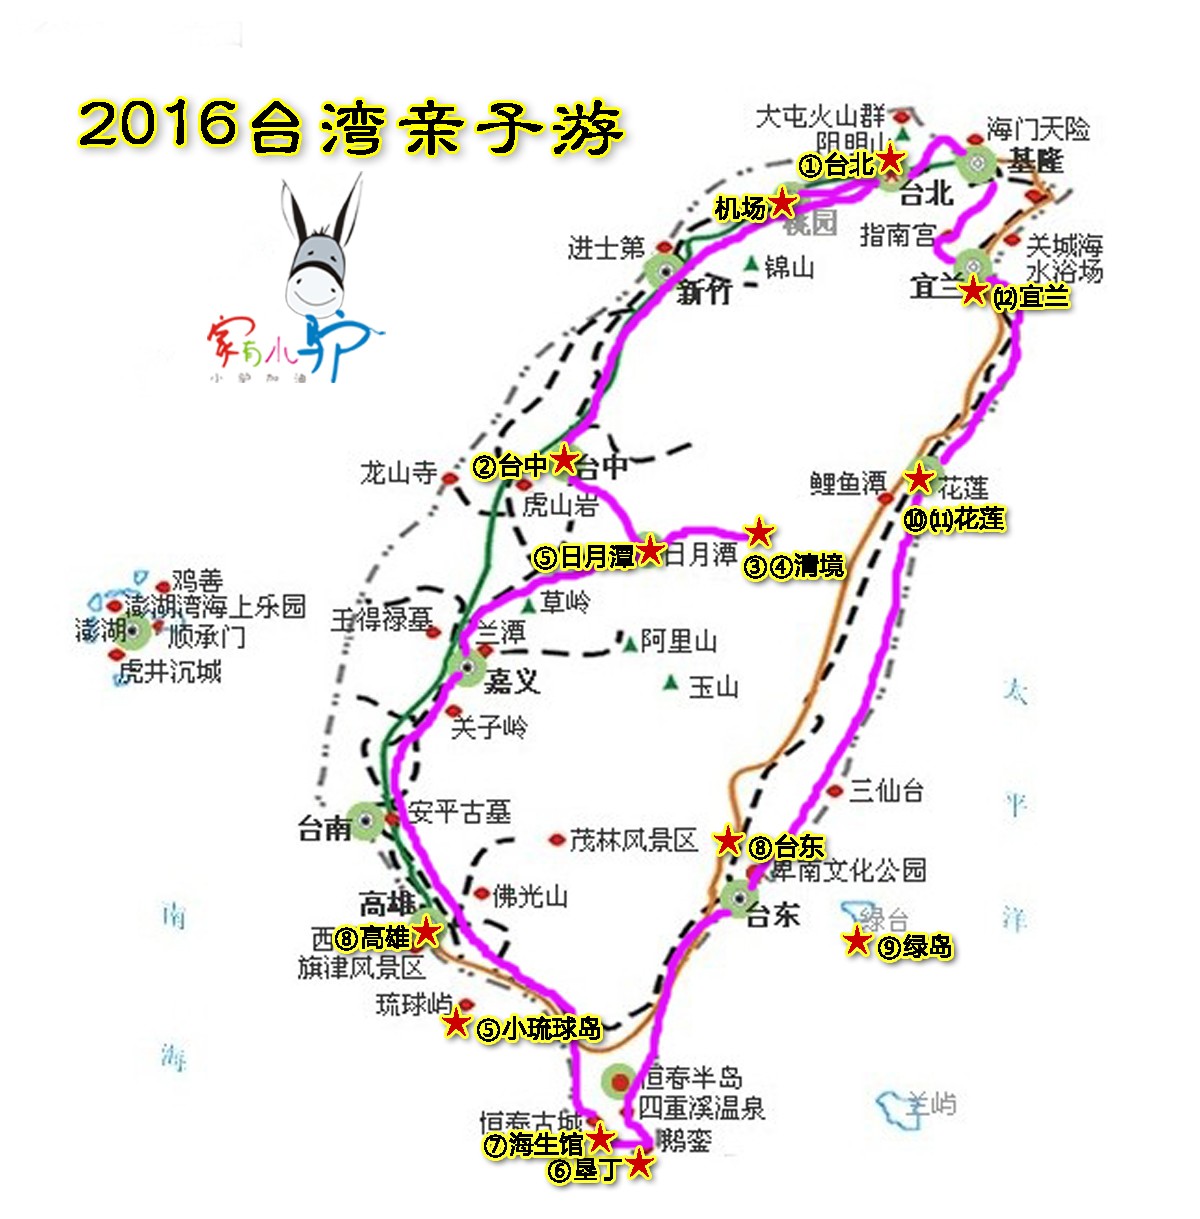 2015台湾路线图 拷贝.jpg